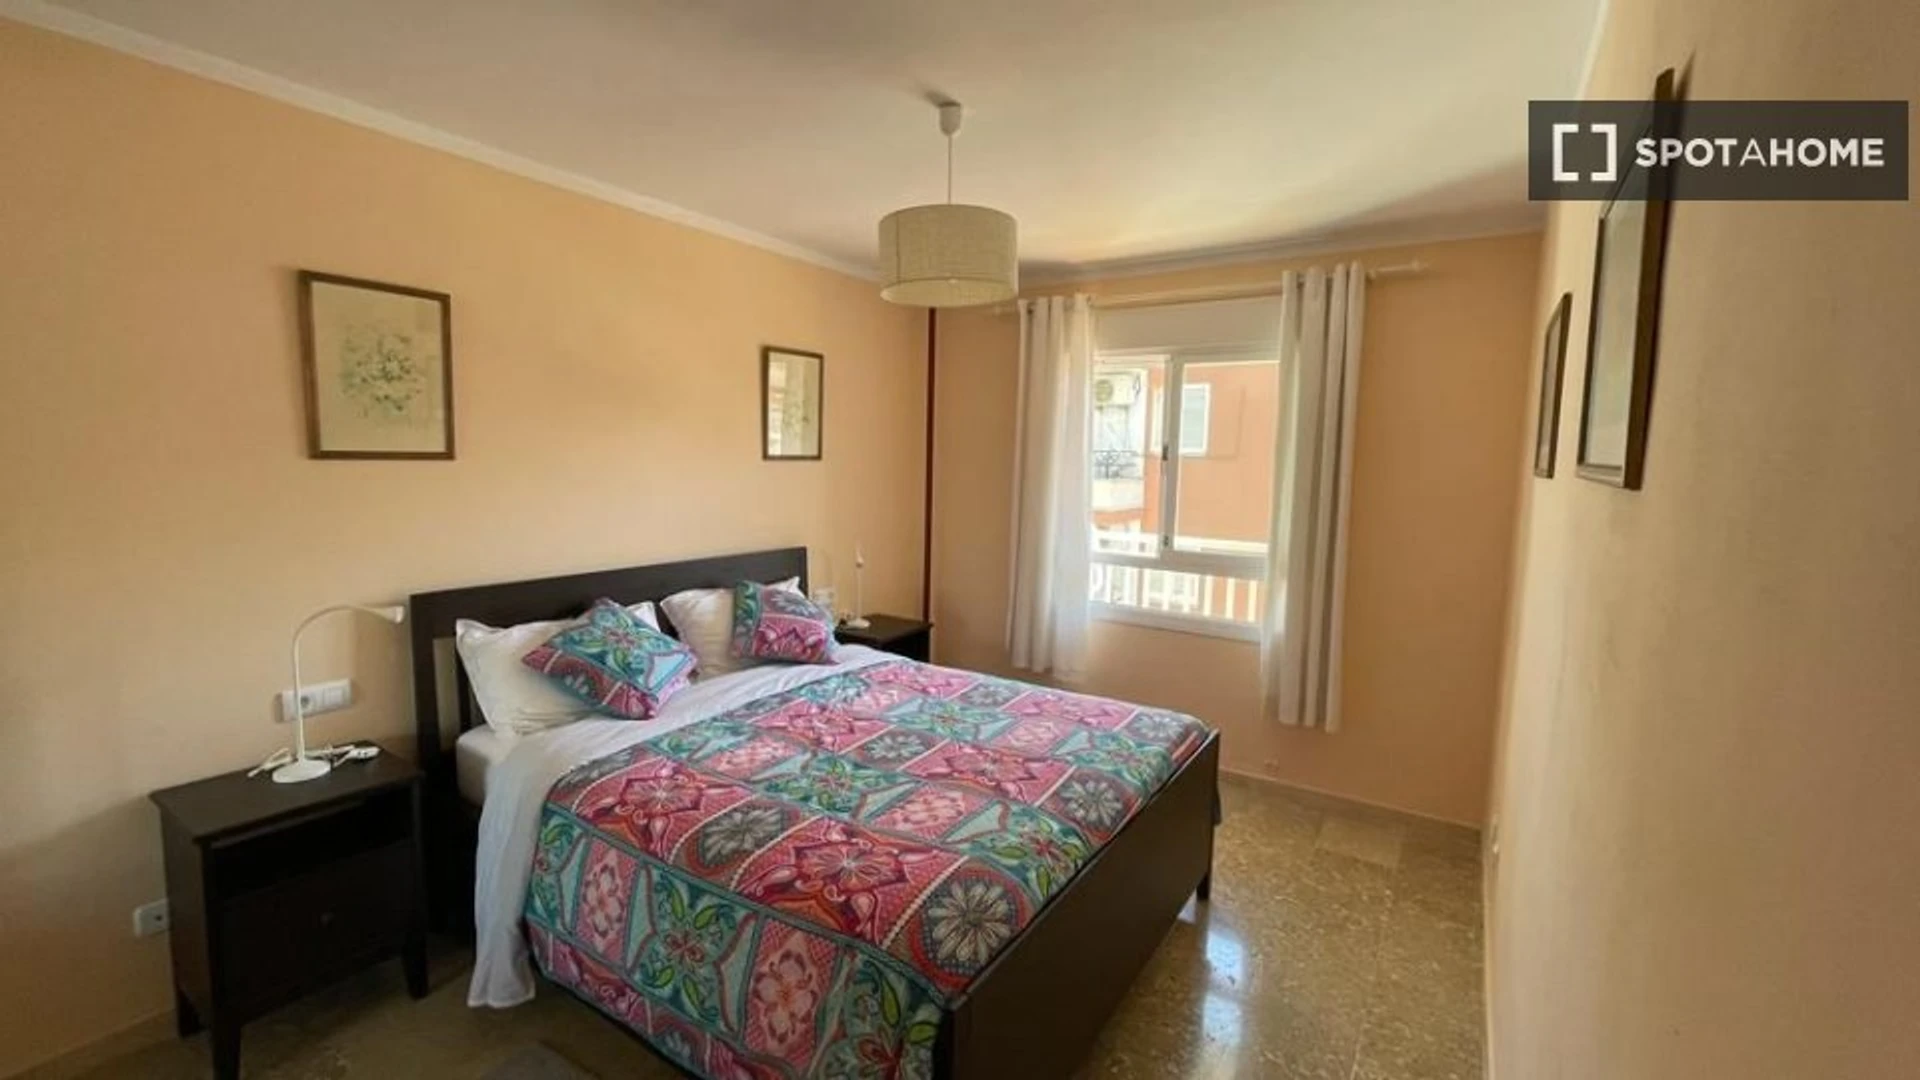 Alquiler de habitación en piso compartido en Palma De Mallorca